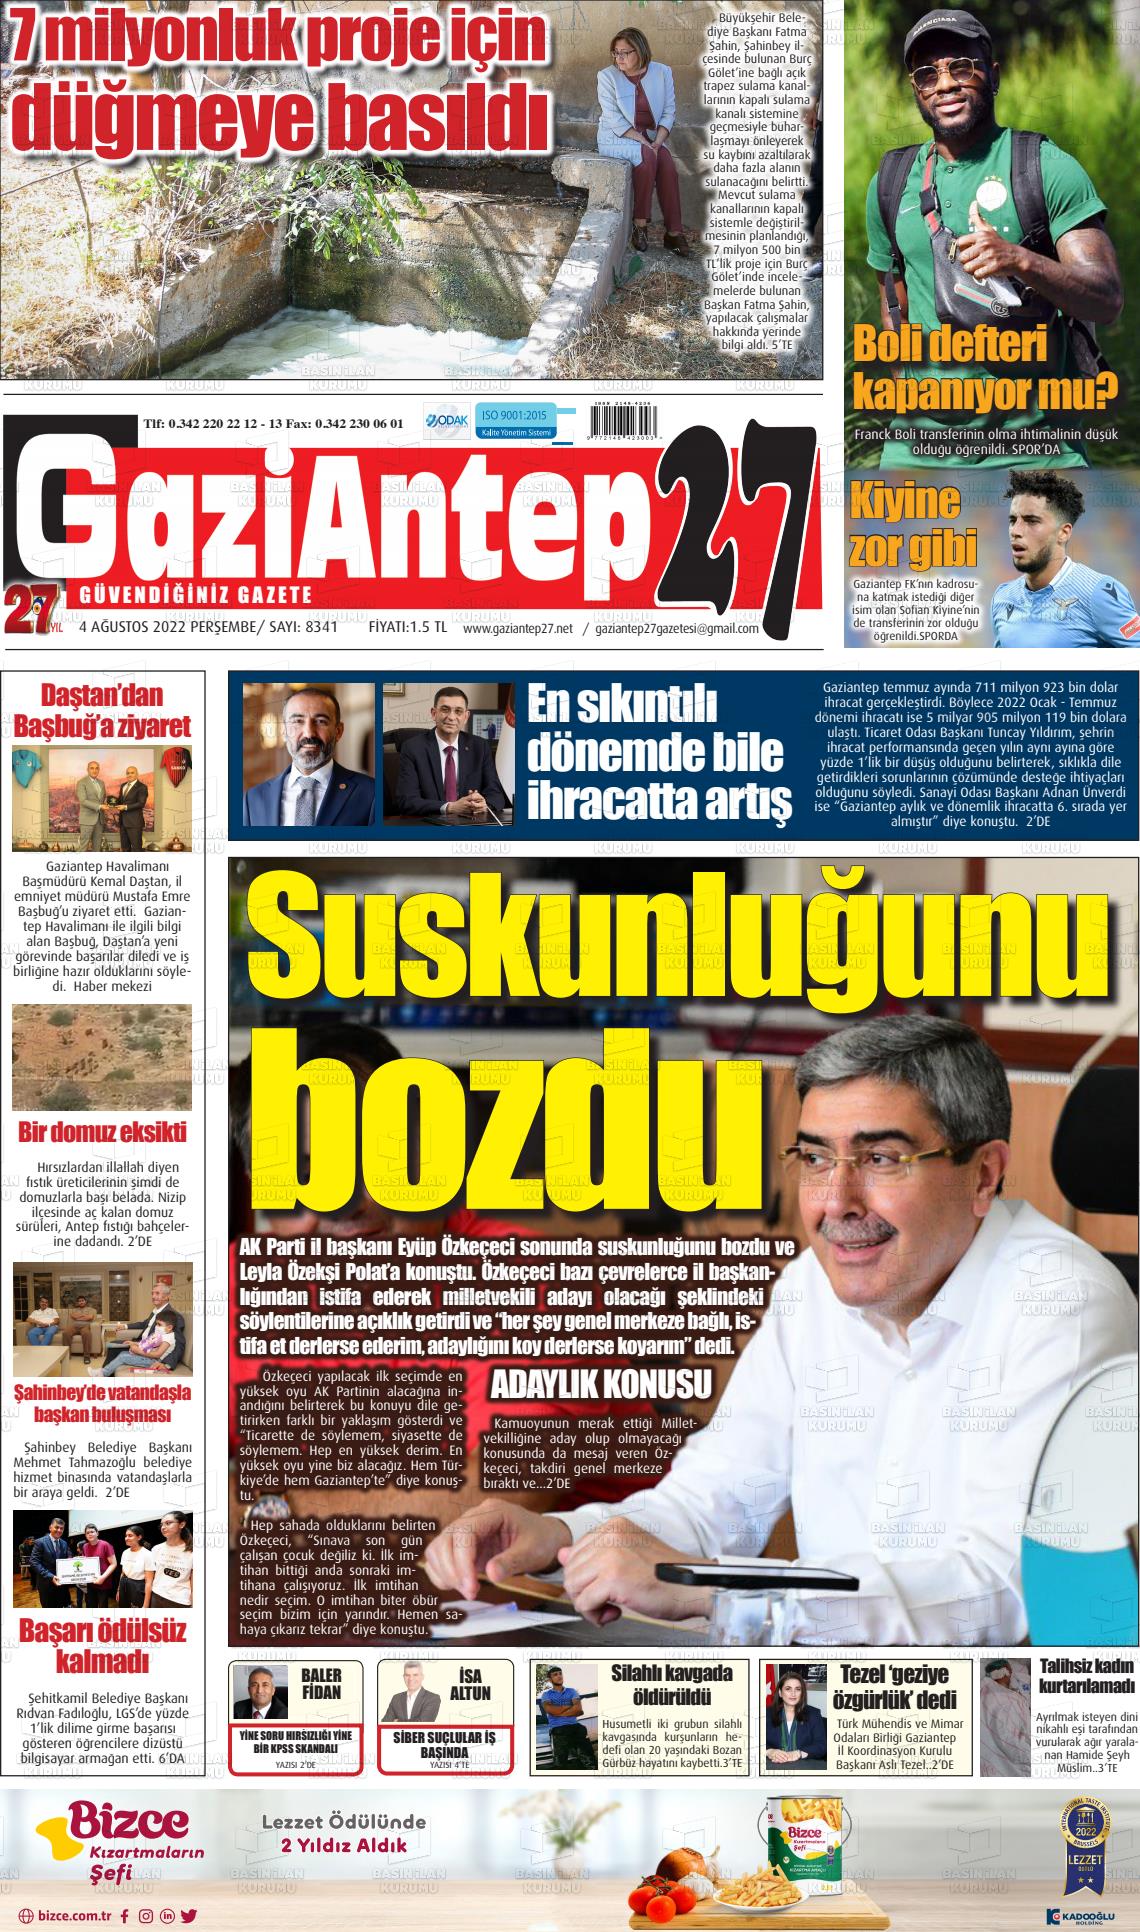 04 Ağustos 2022 Gaziantep 27 Gazete Manşeti